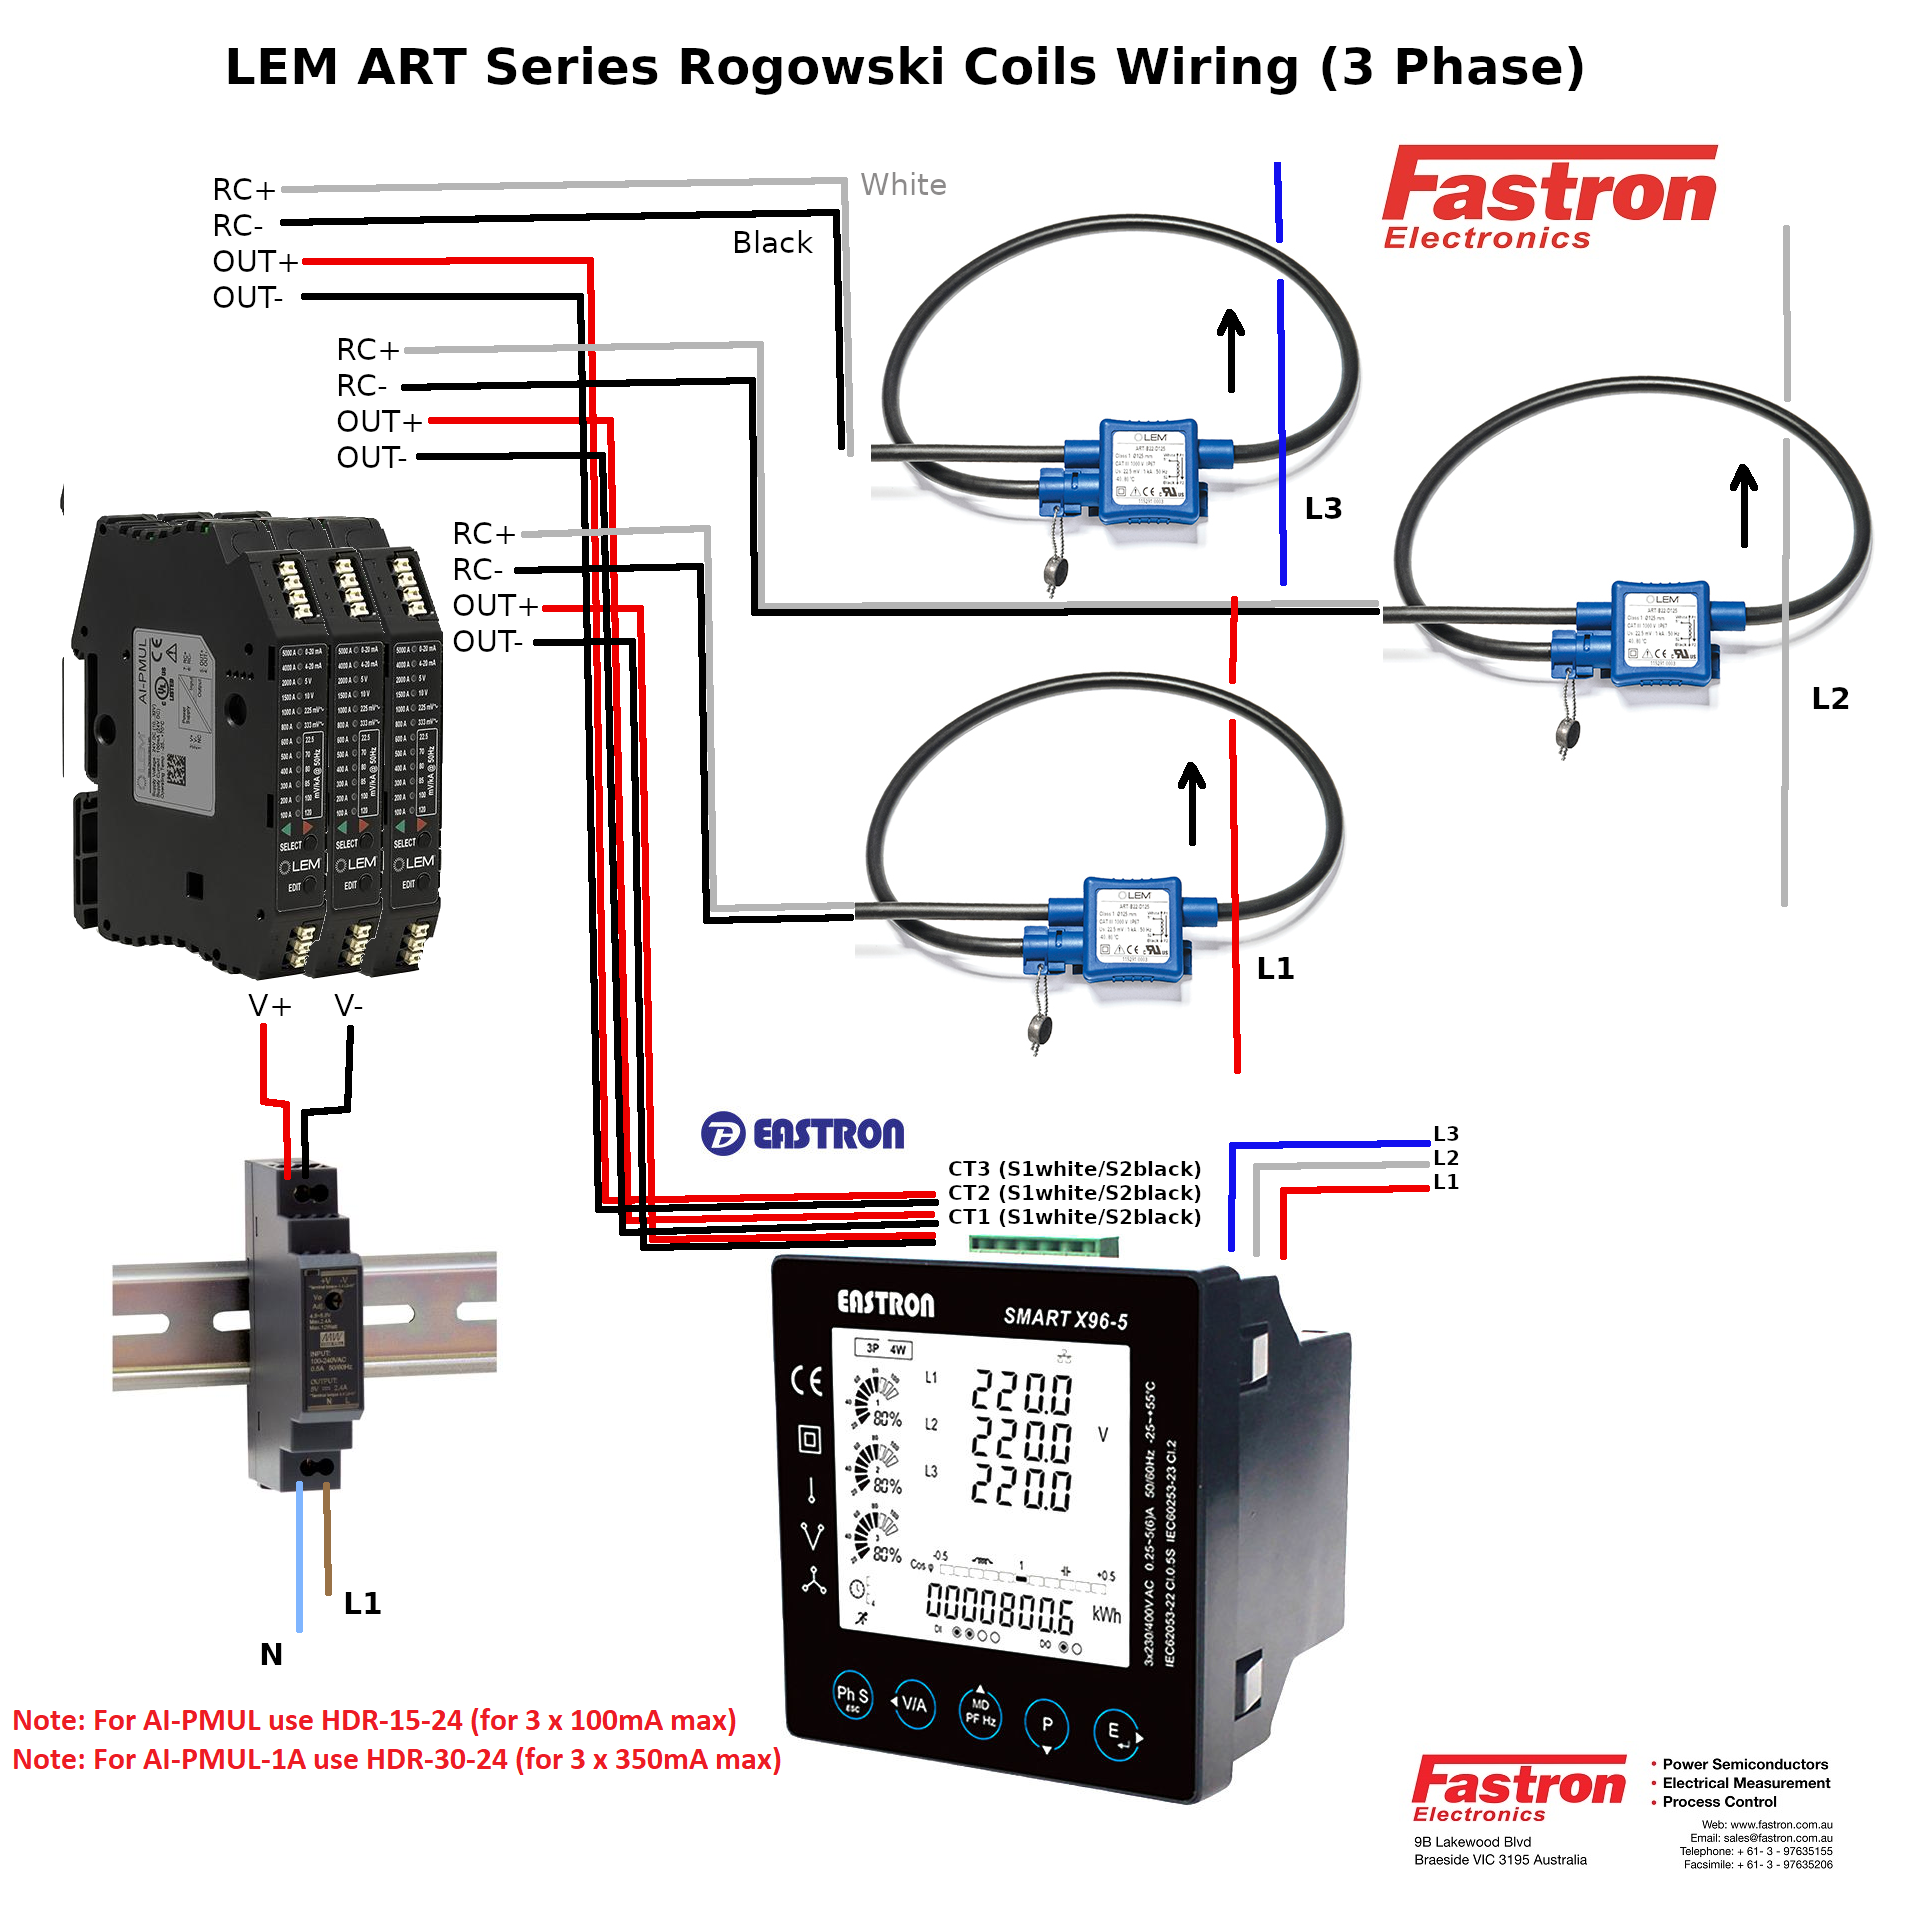 ART-B22-D125-SP6 + AI-P1A - 3 Pcs, 3 Phase Rogowski Coil Set, Class 1, 1 Amp AC, Sensitivity, and Measurement Range, 12.5cm Diameter, 6M integrator Cable